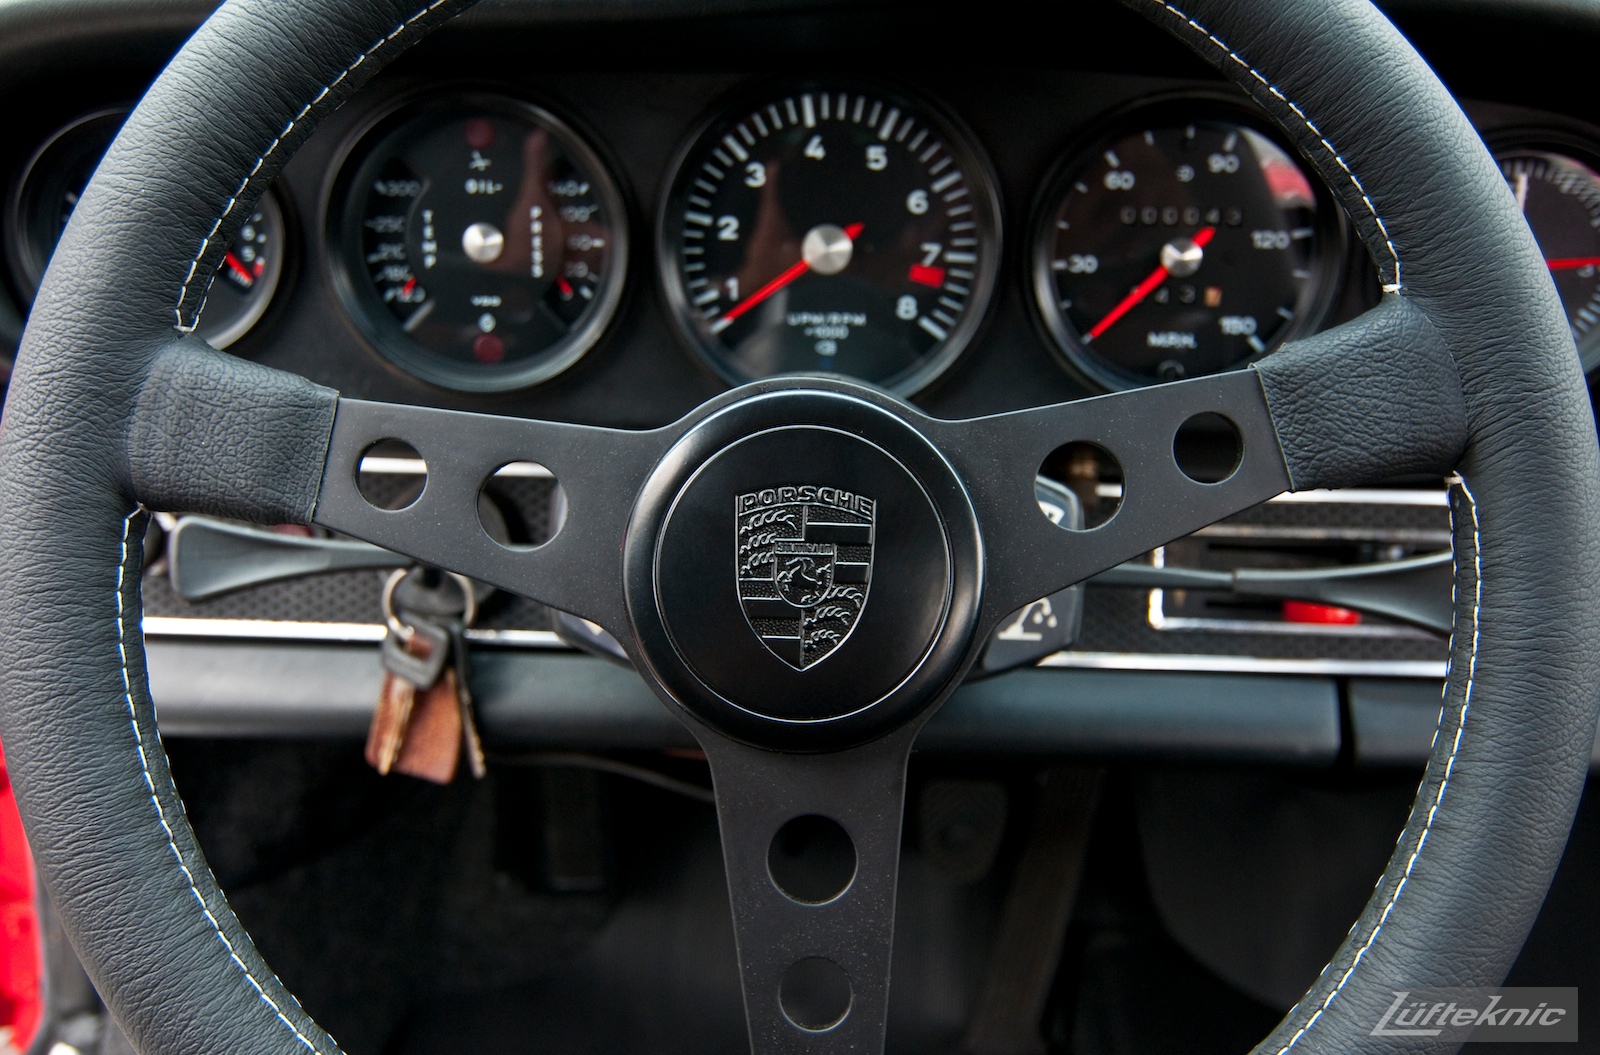 Momo steering wheel with Porsche horn button